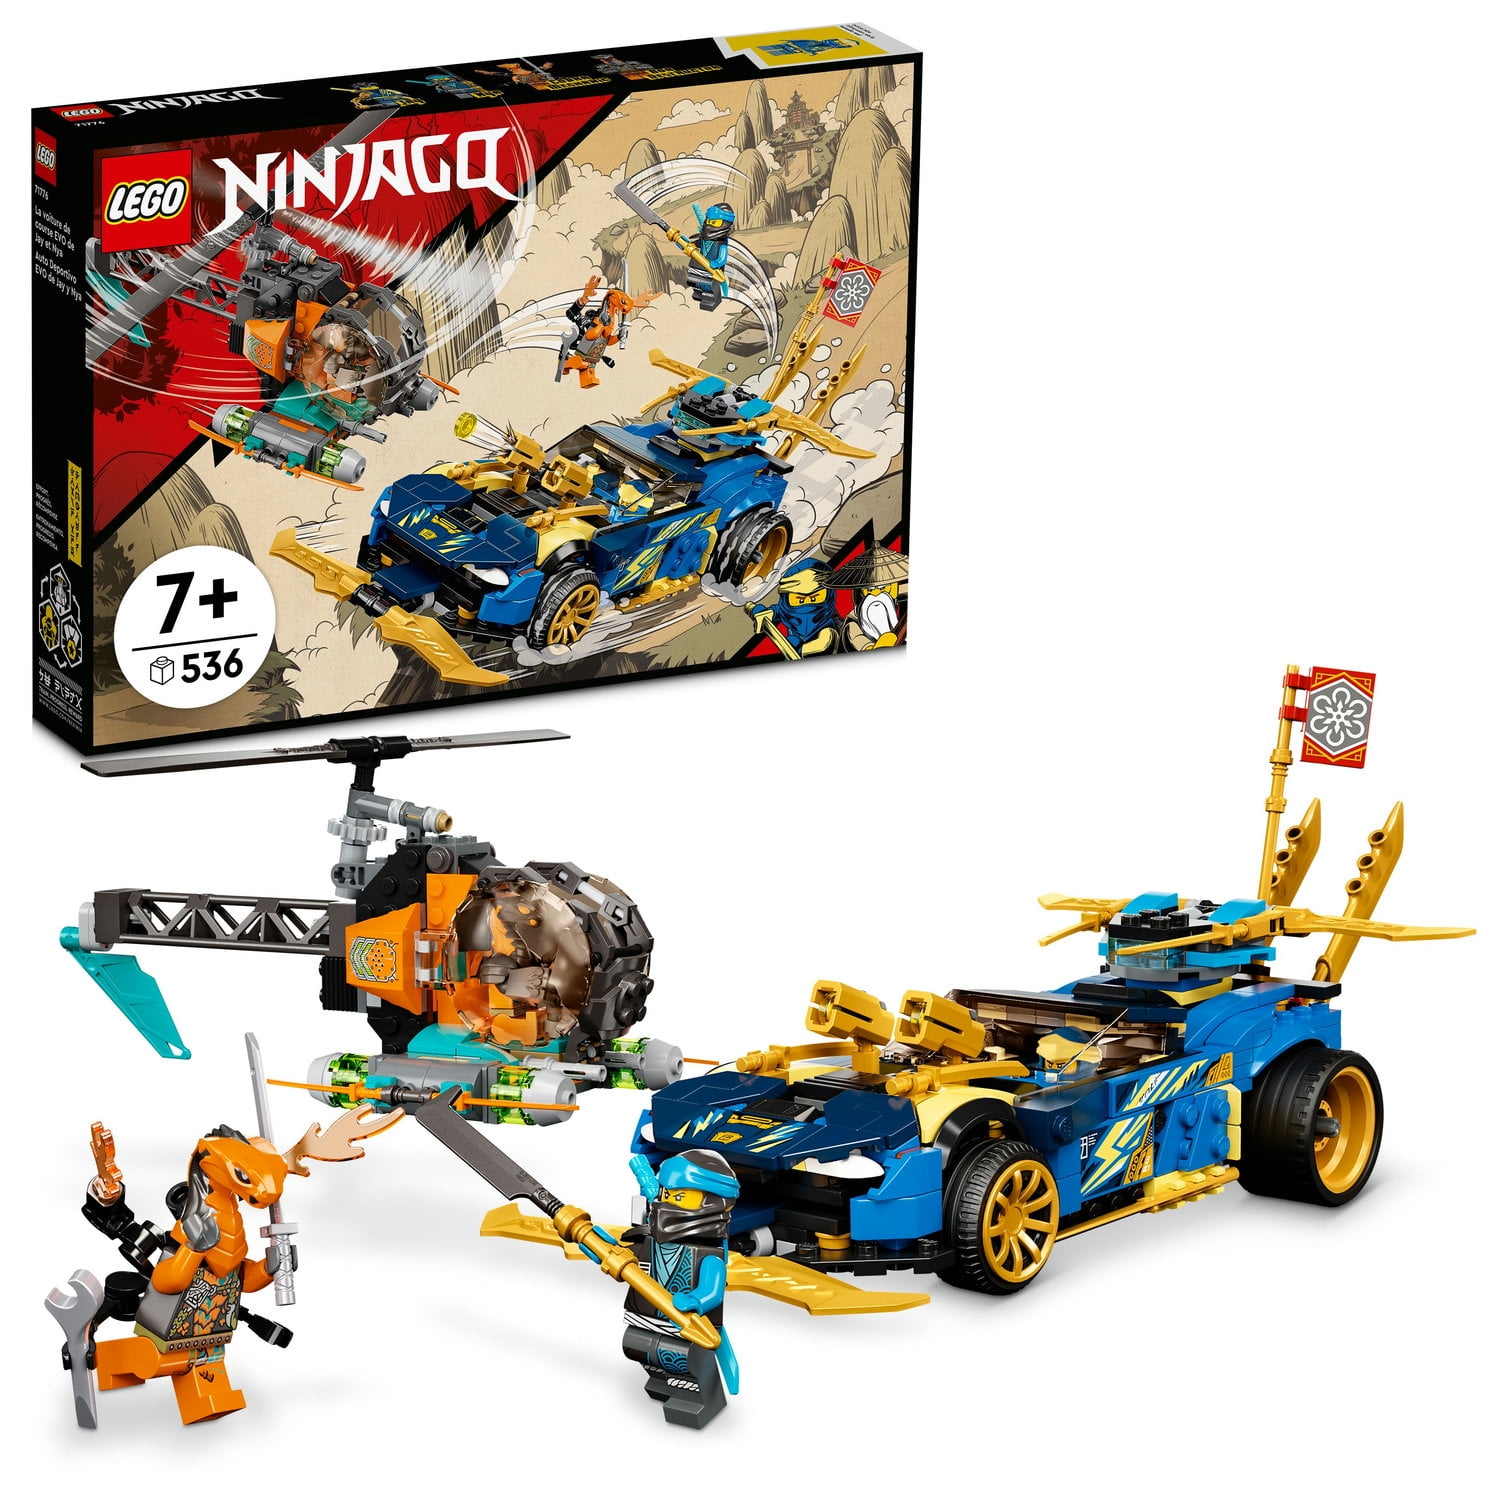 3D Lego Ninjago Movie Large Friends VINYL WALL STICKER DECALS CHILDREN 198 